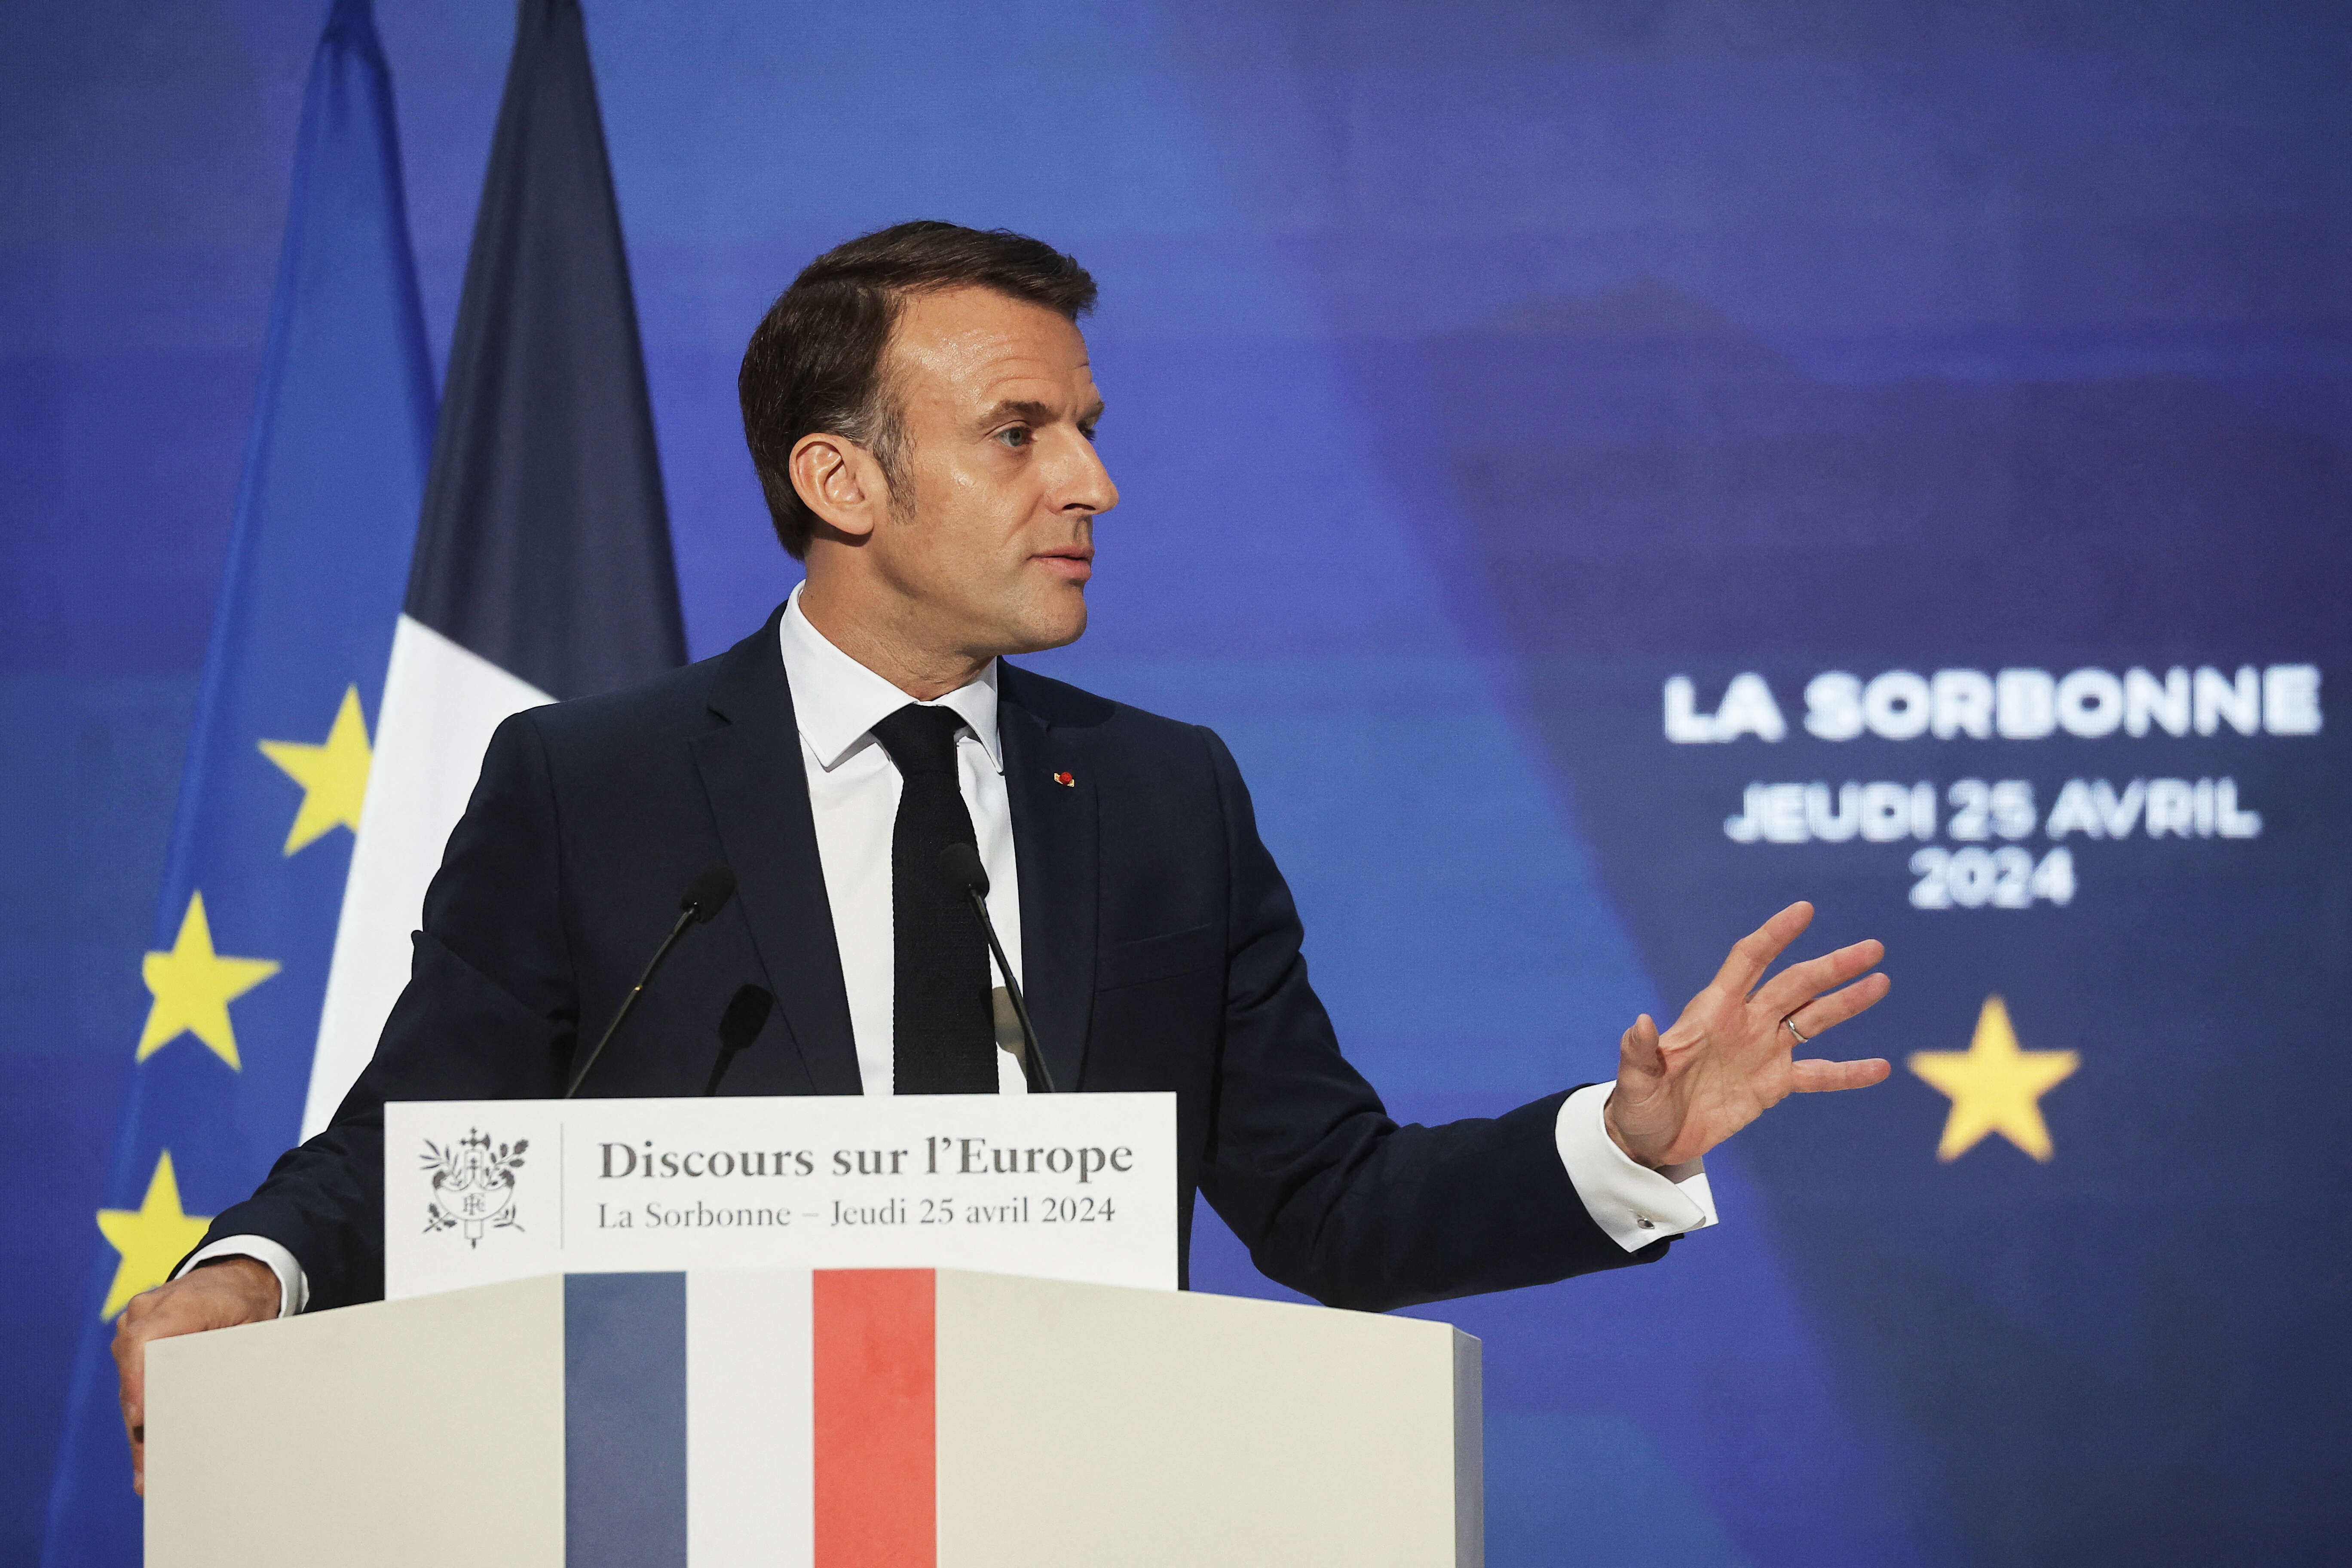 Défense européenne : Macron sous le feu des critiques après ses propos sur la dissuasion nucléaire